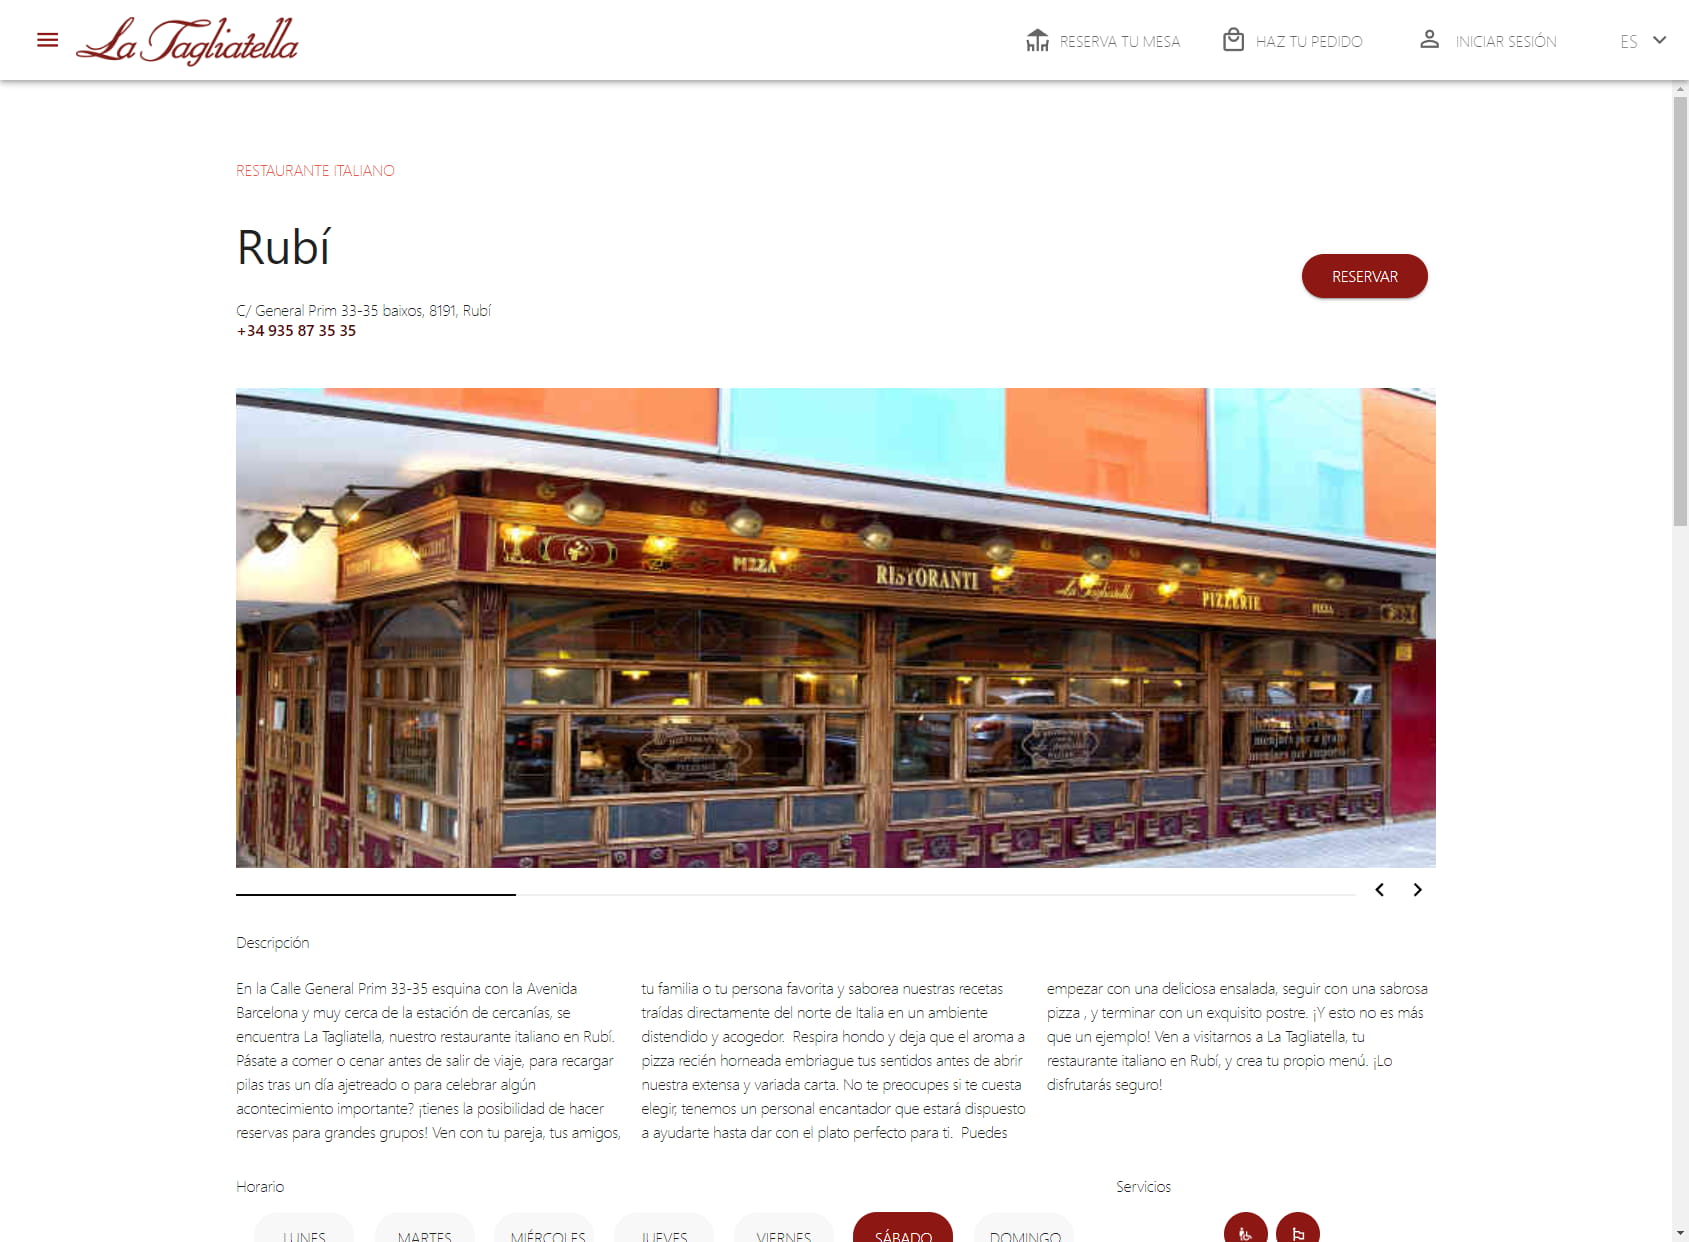 Restaurant La Tagliatella | Rubí